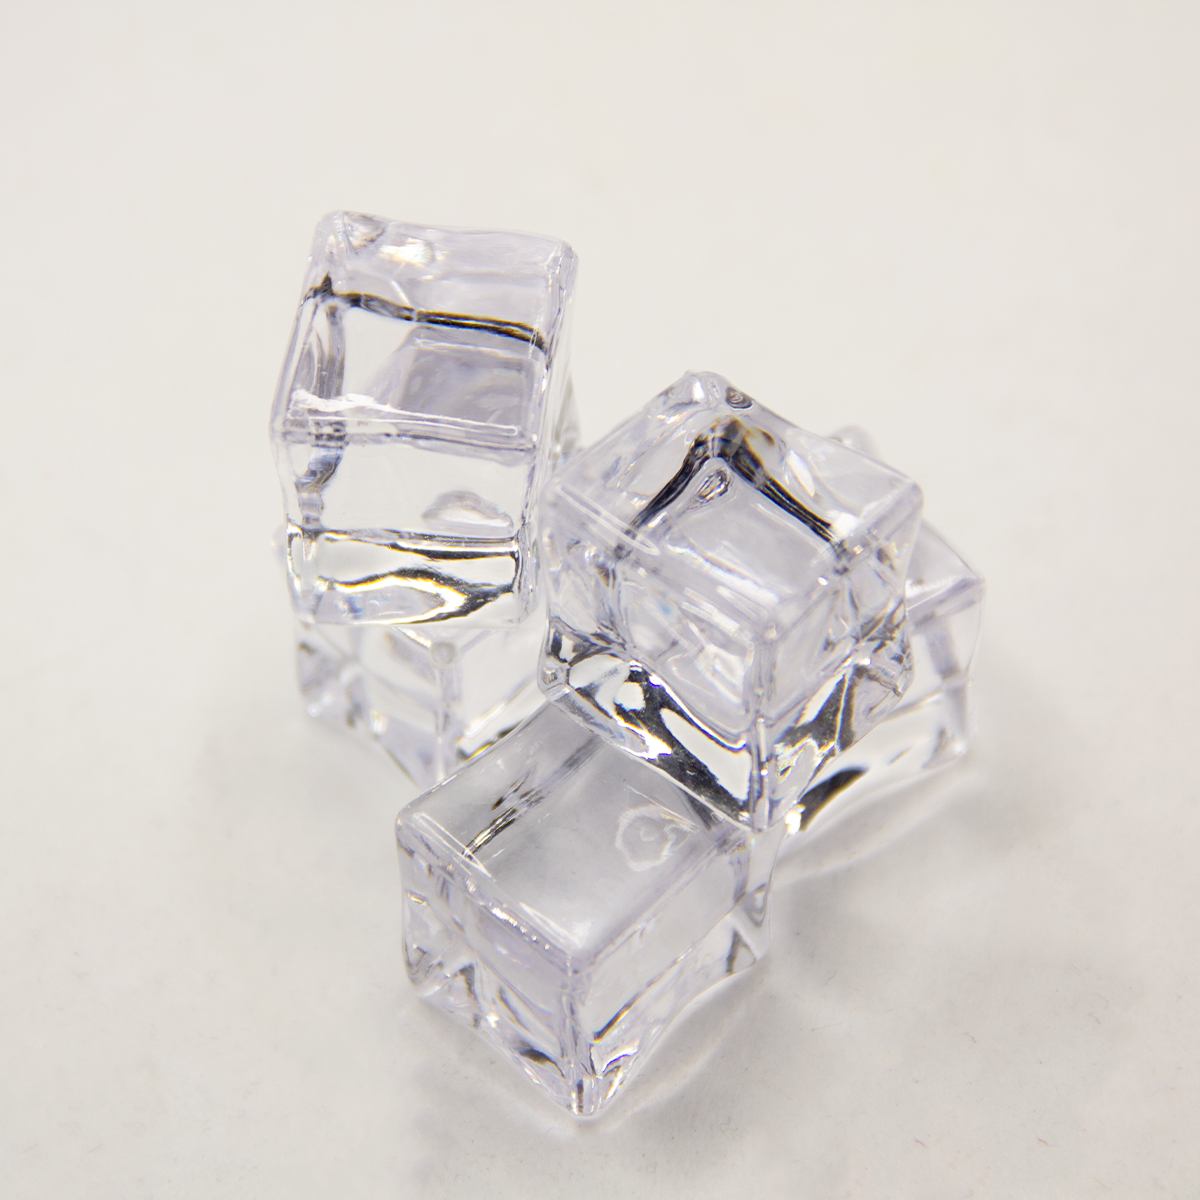 Acrylic Tumbler Shapes - Ice Cubes